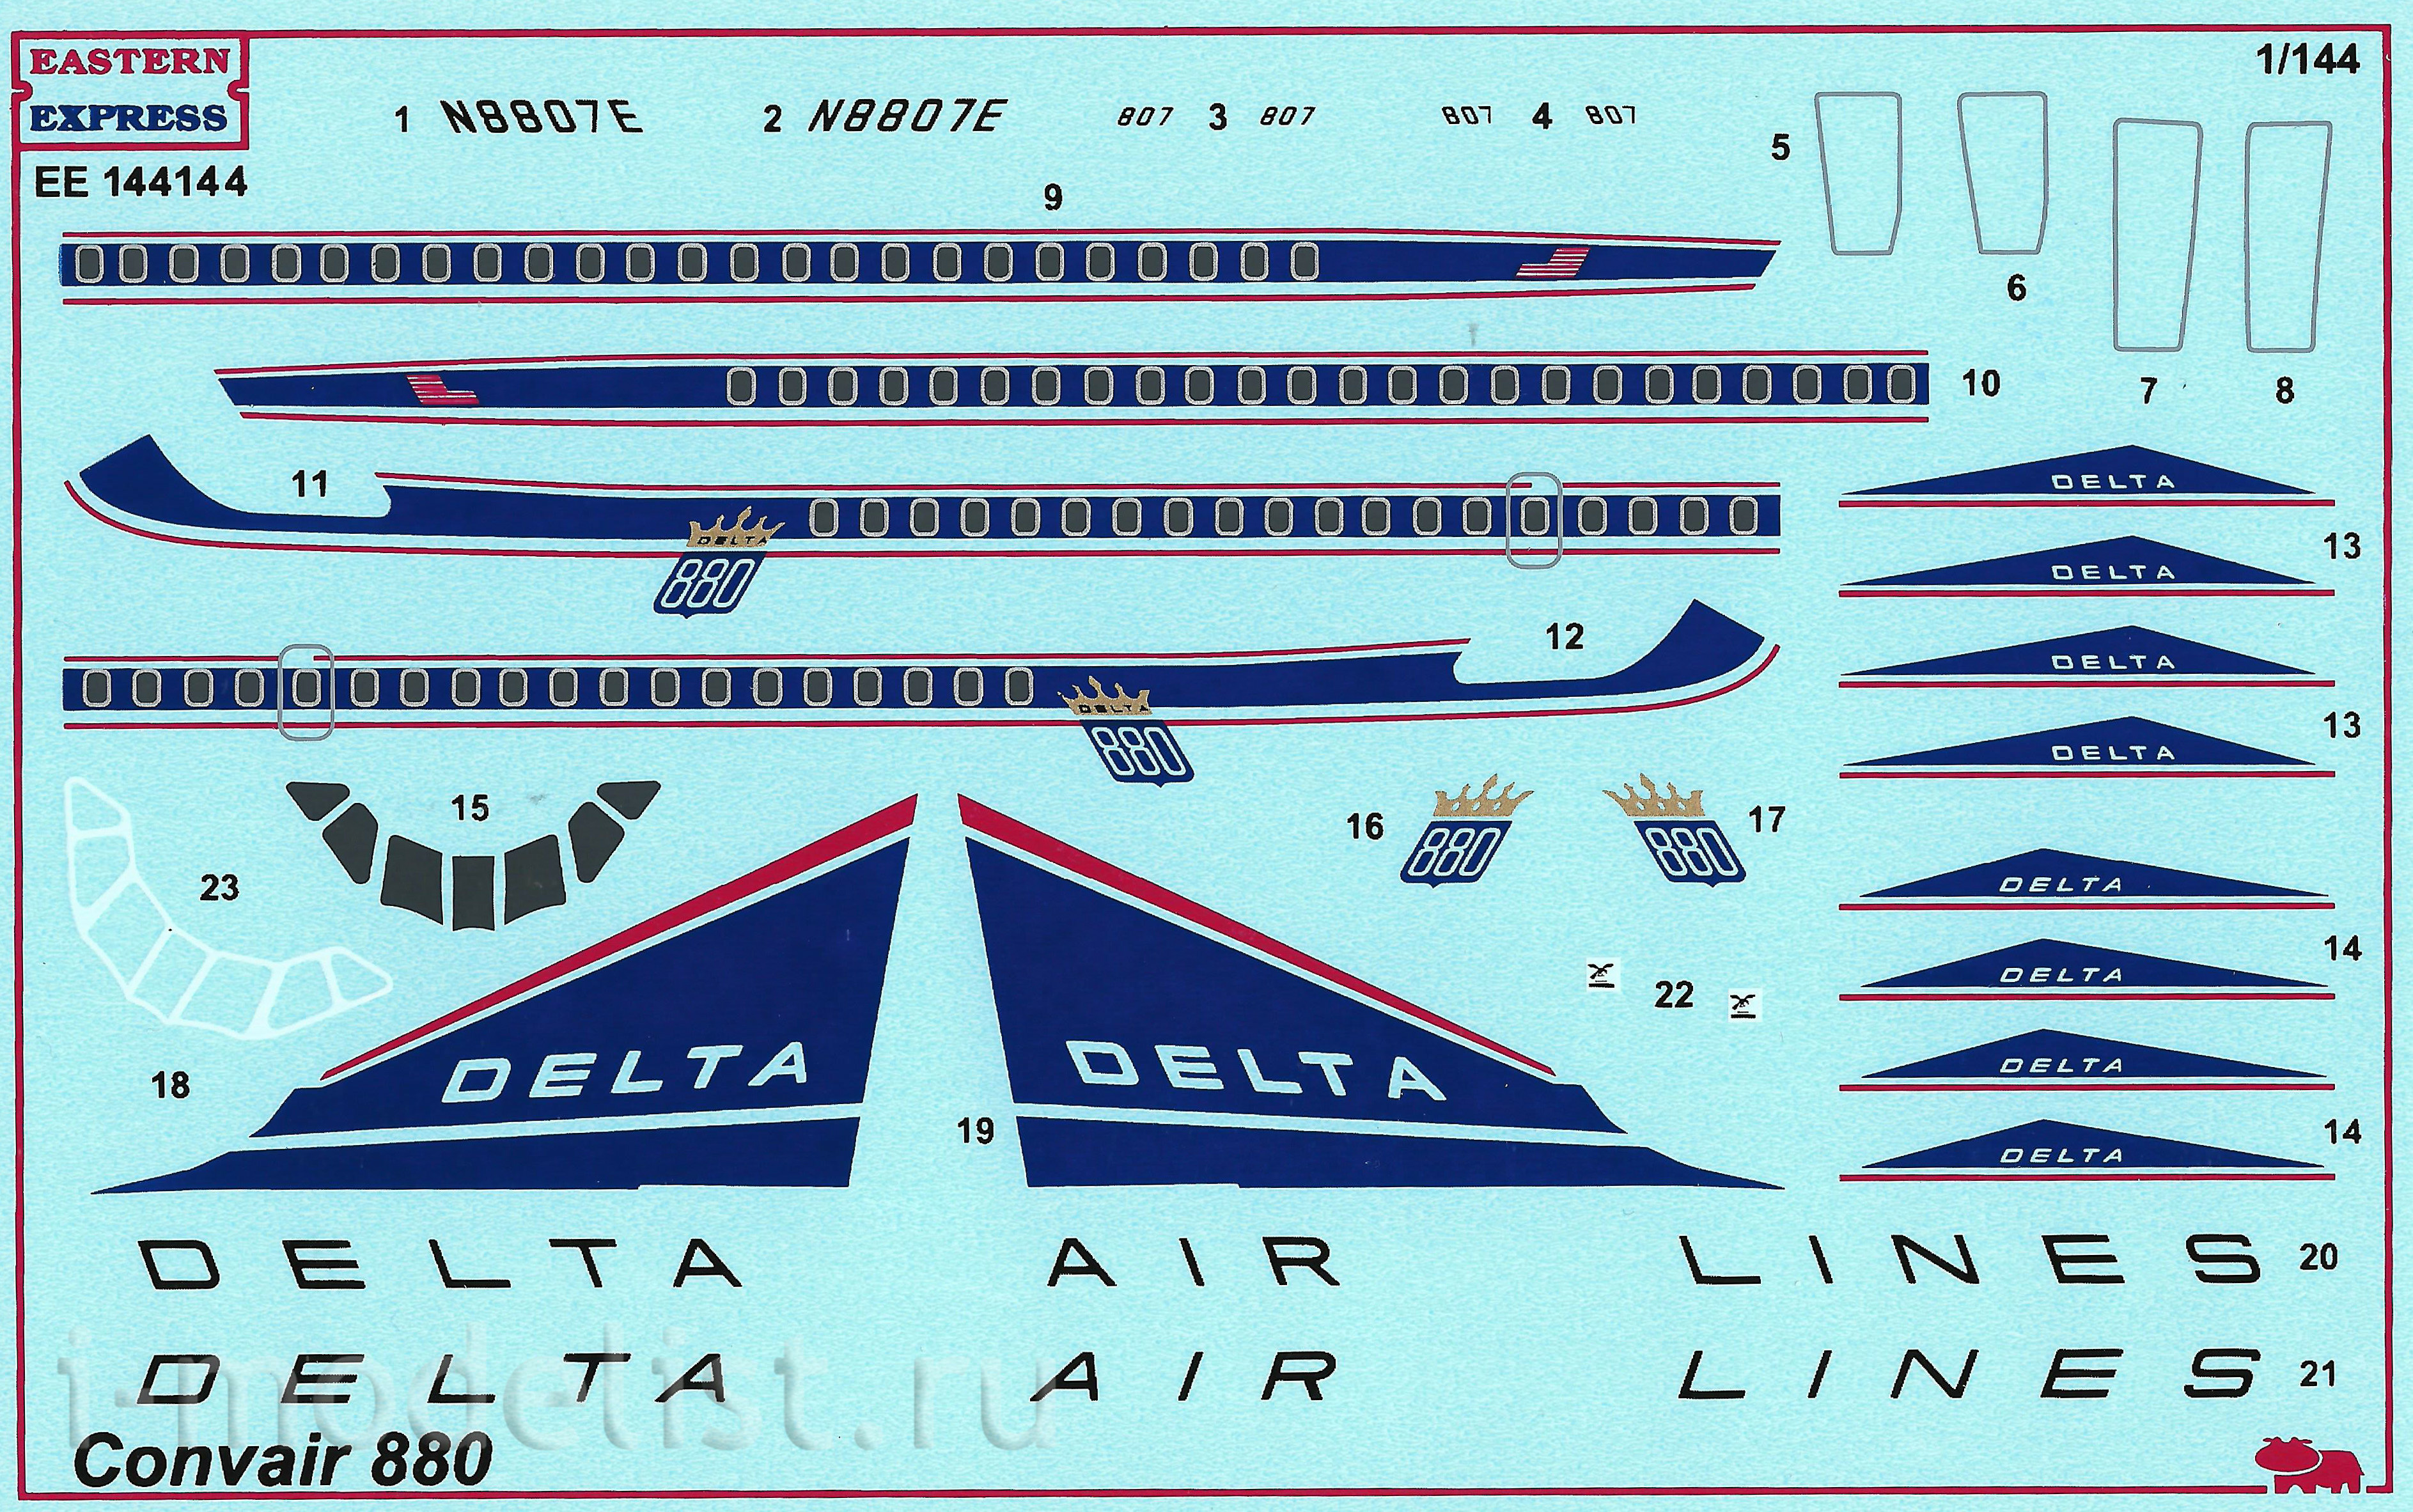 144144 Восточный экспресс 1/144 Авиалайнер Convair 880